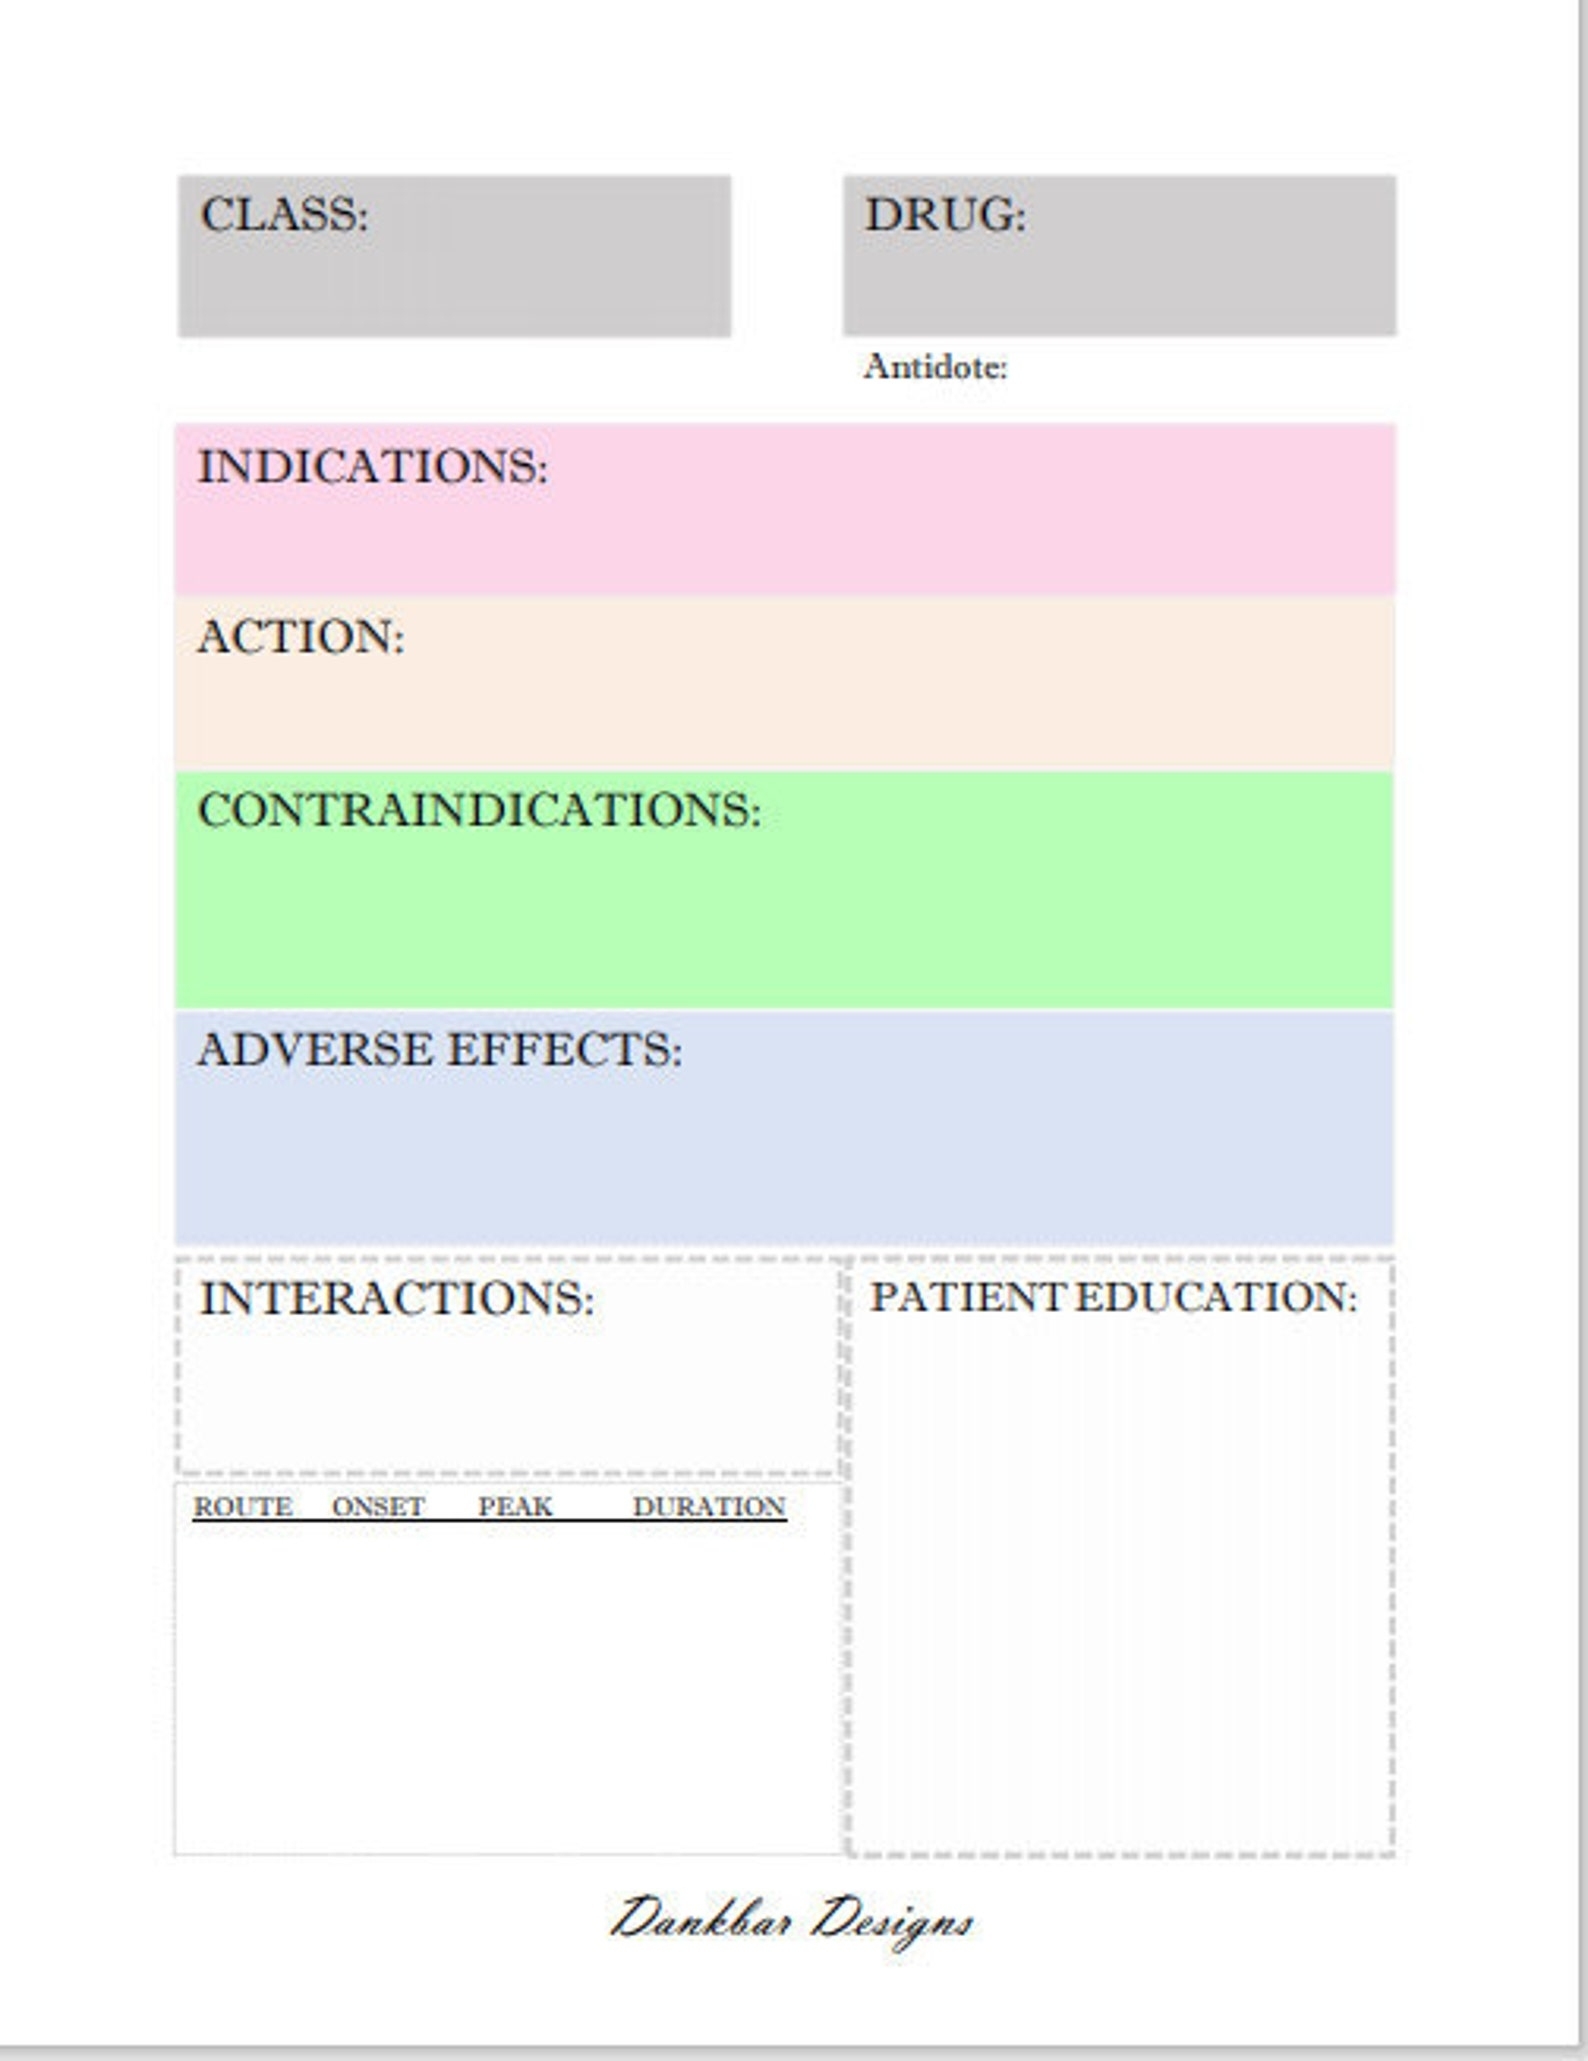 Pharmacology Drug Card Template - Etsy Ireland Intended For Pharmacology Drug Card Template